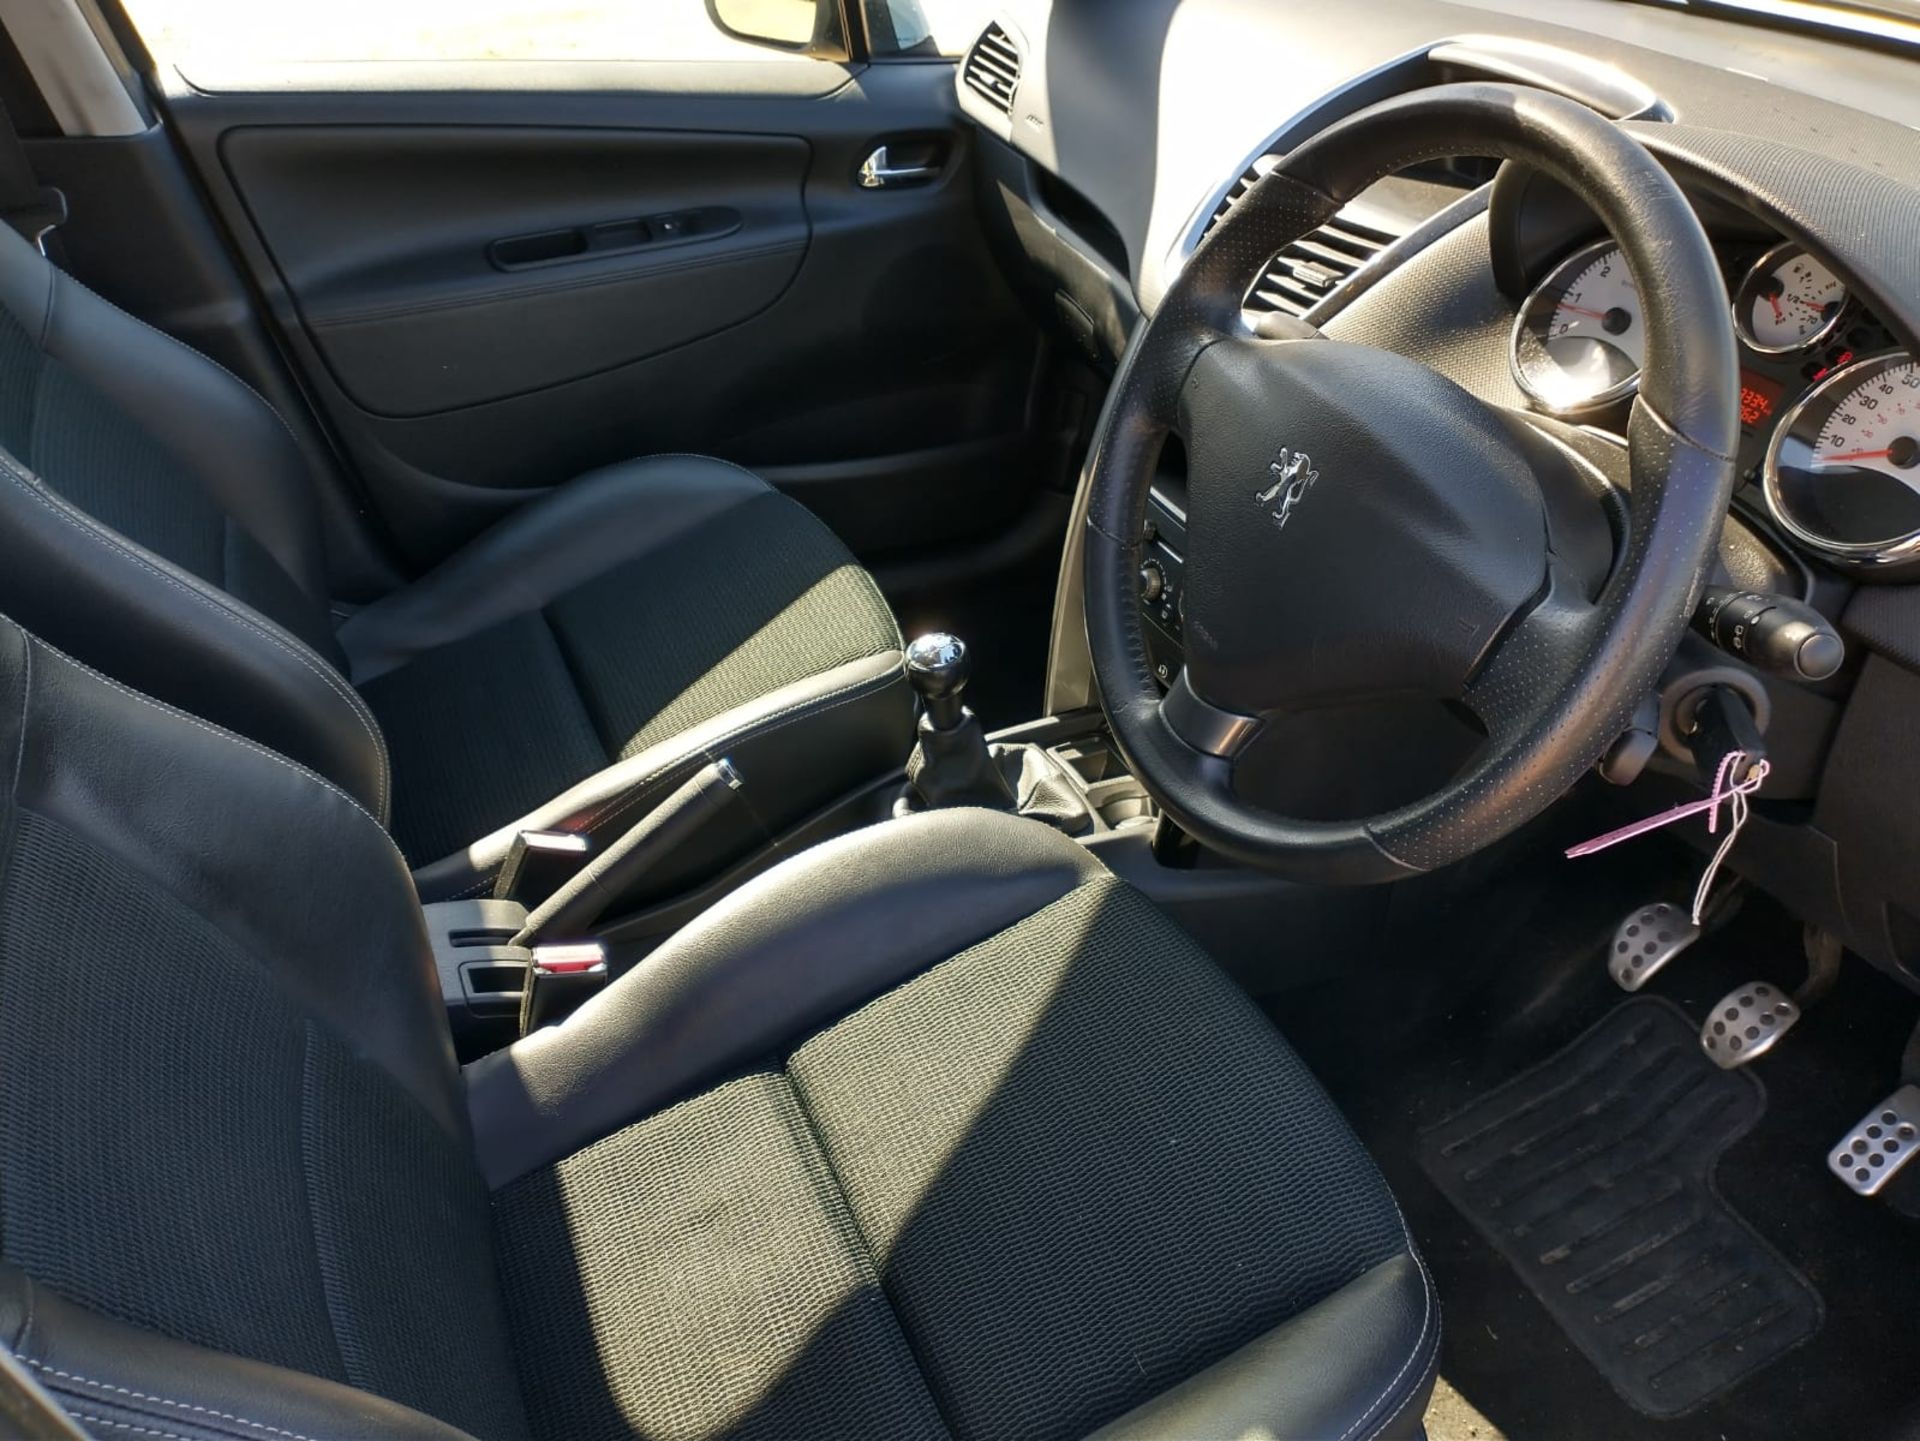 2012 Peugeot 207 Allure 1.6 5DR Hatchback - Image 8 of 16